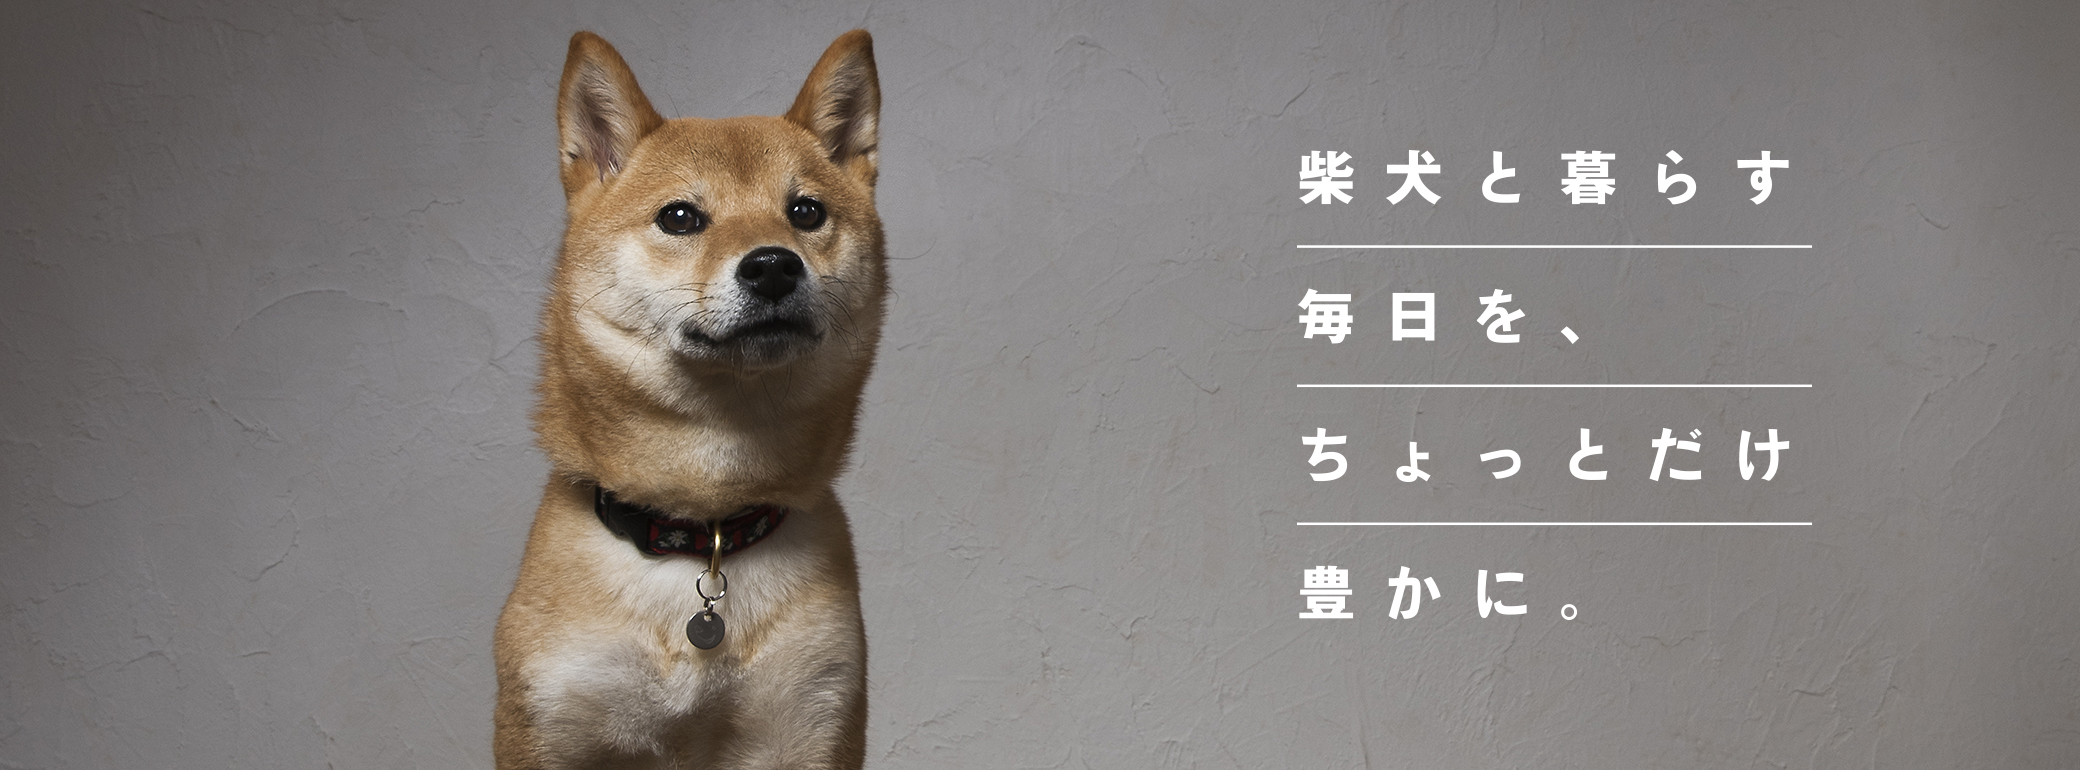 柴犬情報メディア「SHIBA-INU LIFE」